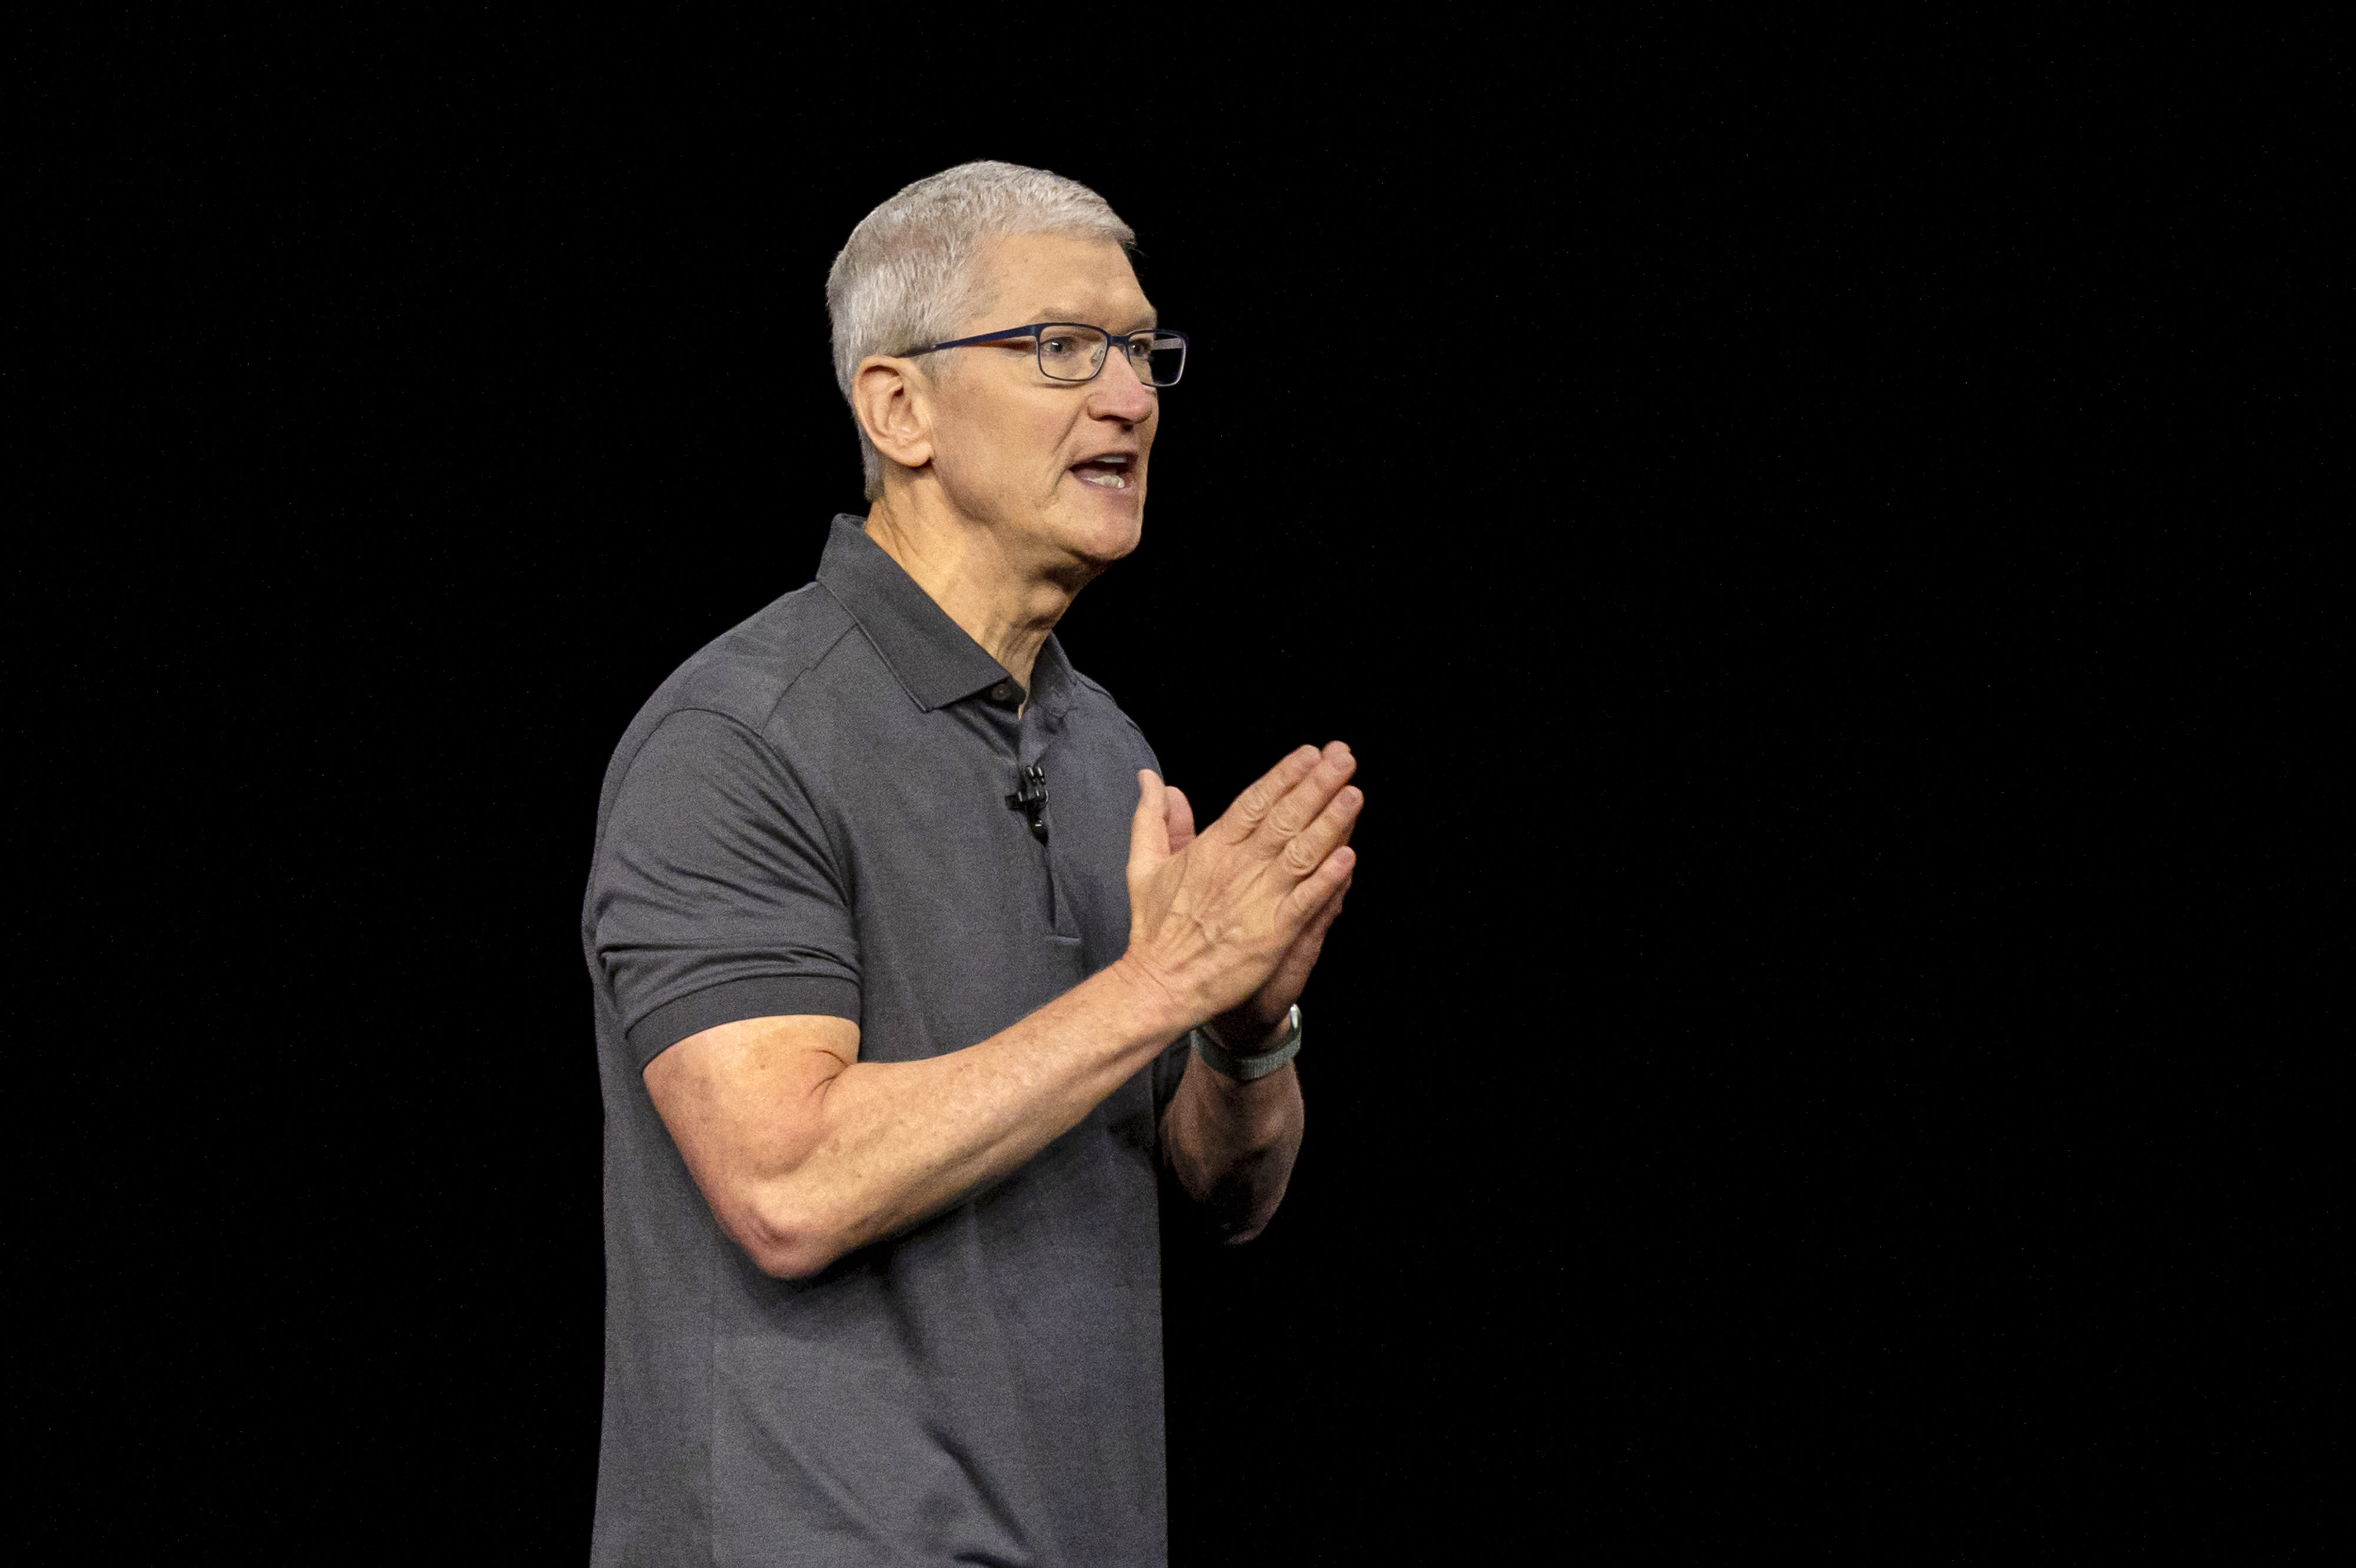 La domanda di MacBook è diminuita “significativamente”, afferma l’analista senior di Apple